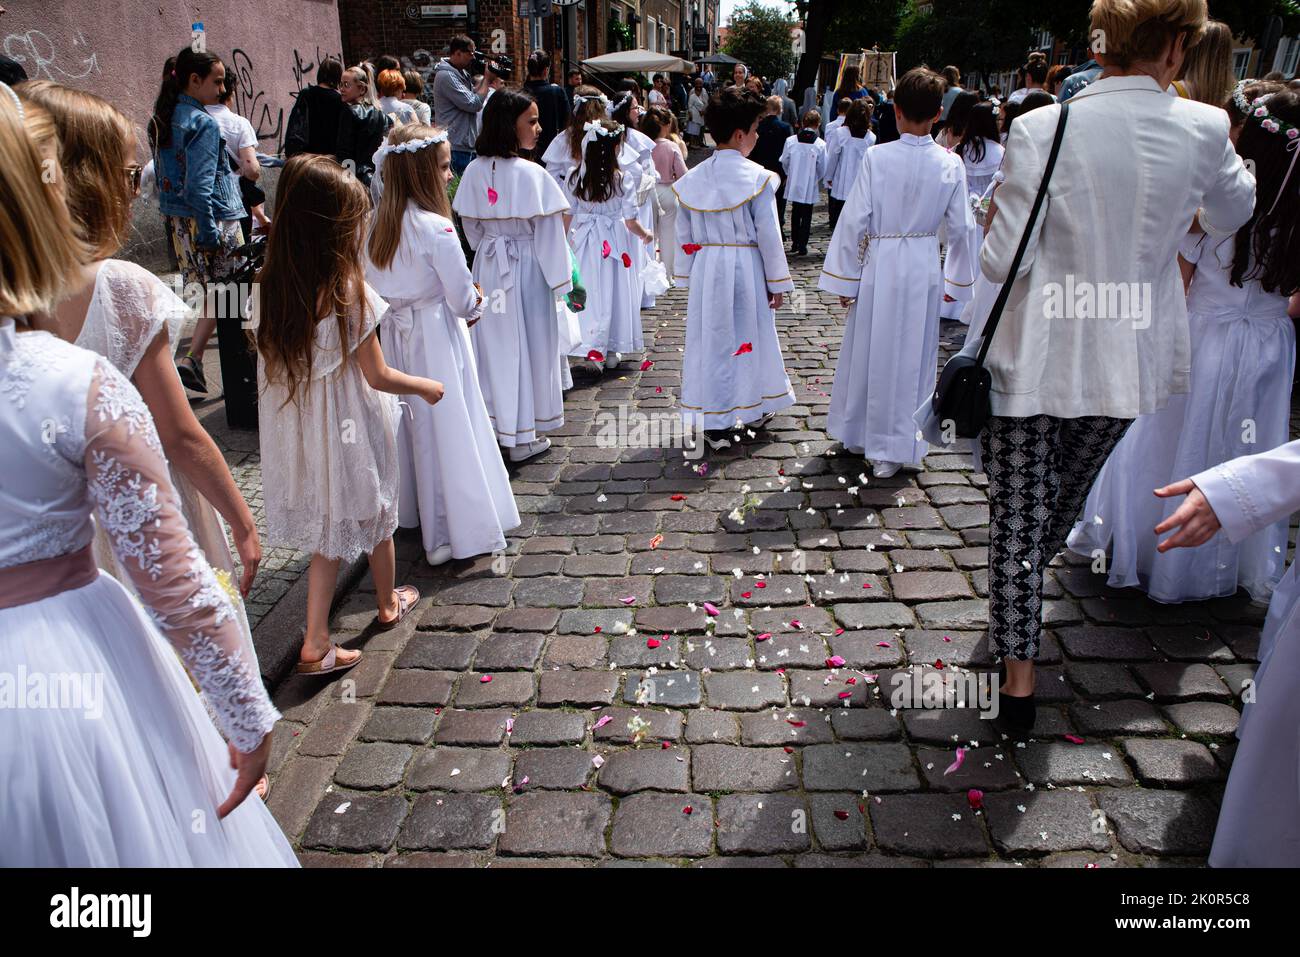 Kinder in weißen Kleidern werfen während der Prozession Blumen. Fronleichnam - liturgische Feier in der katholischen Kirche zu Ehren Jesu Christi im Allerheiligsten Sakrament. Eine Prozession von Gläubigen ging durch die Straßen von GDA?sk. Stockfoto